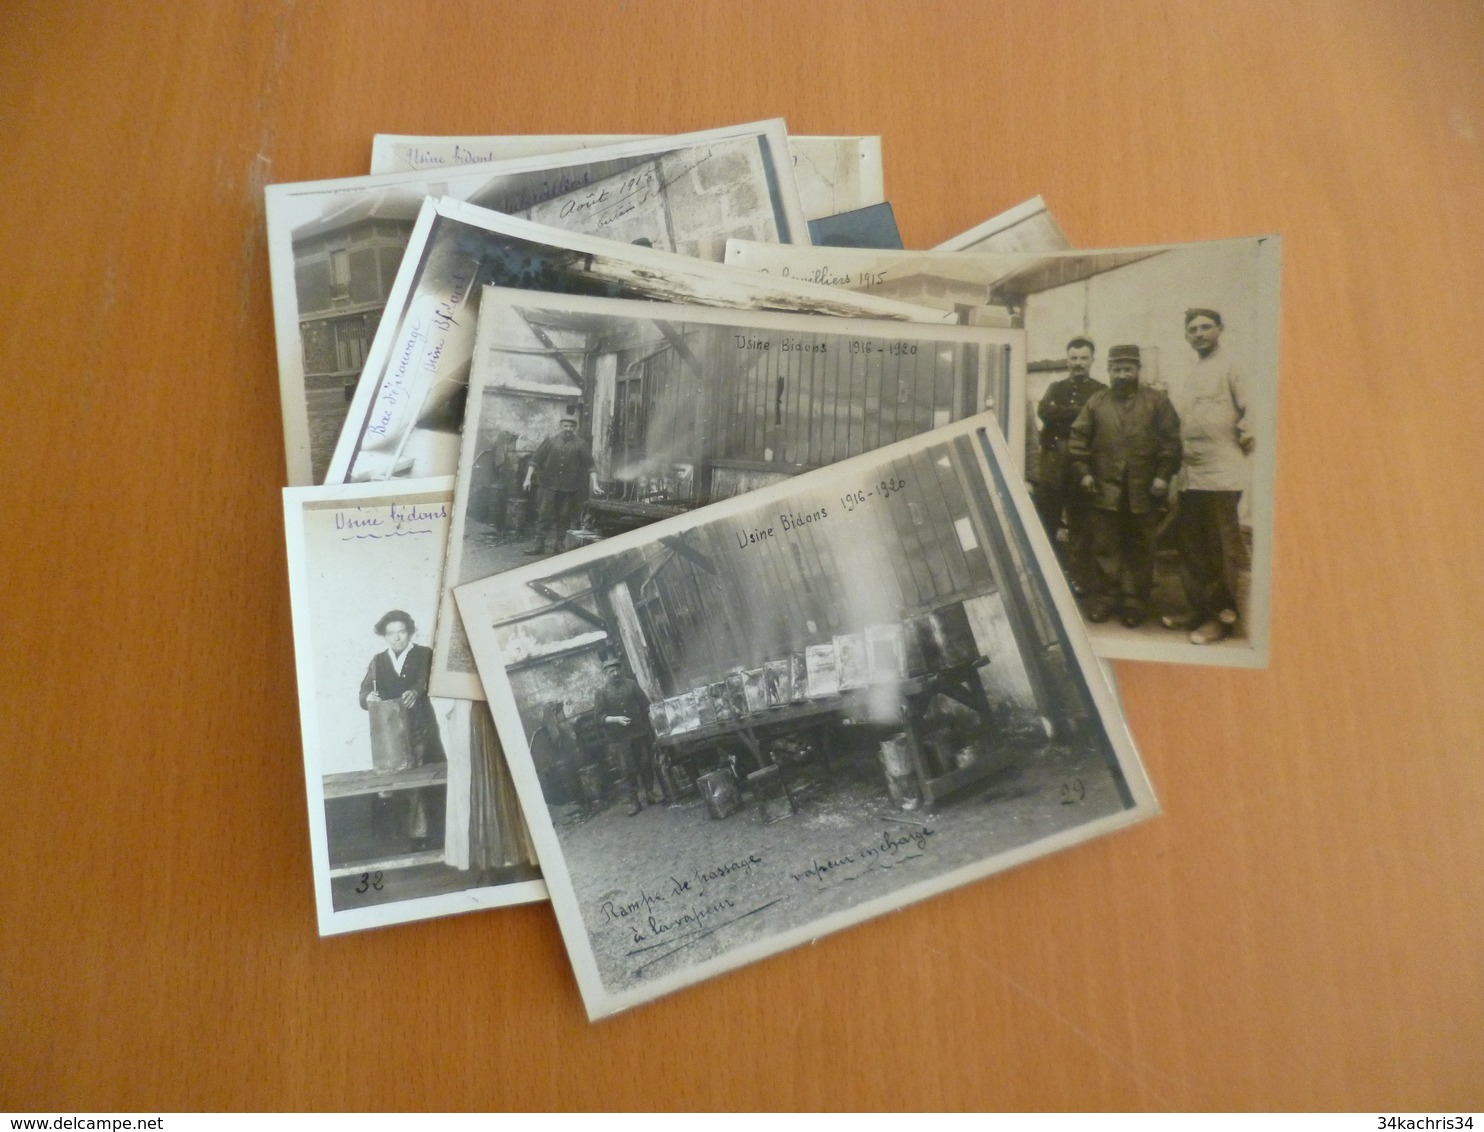 Lot 12 Photos Cartes Photos Aubervilliers Usine De Bidon Recollées Sur Cartons Qques Trous Punaises Sinon TBE - Albums & Collections